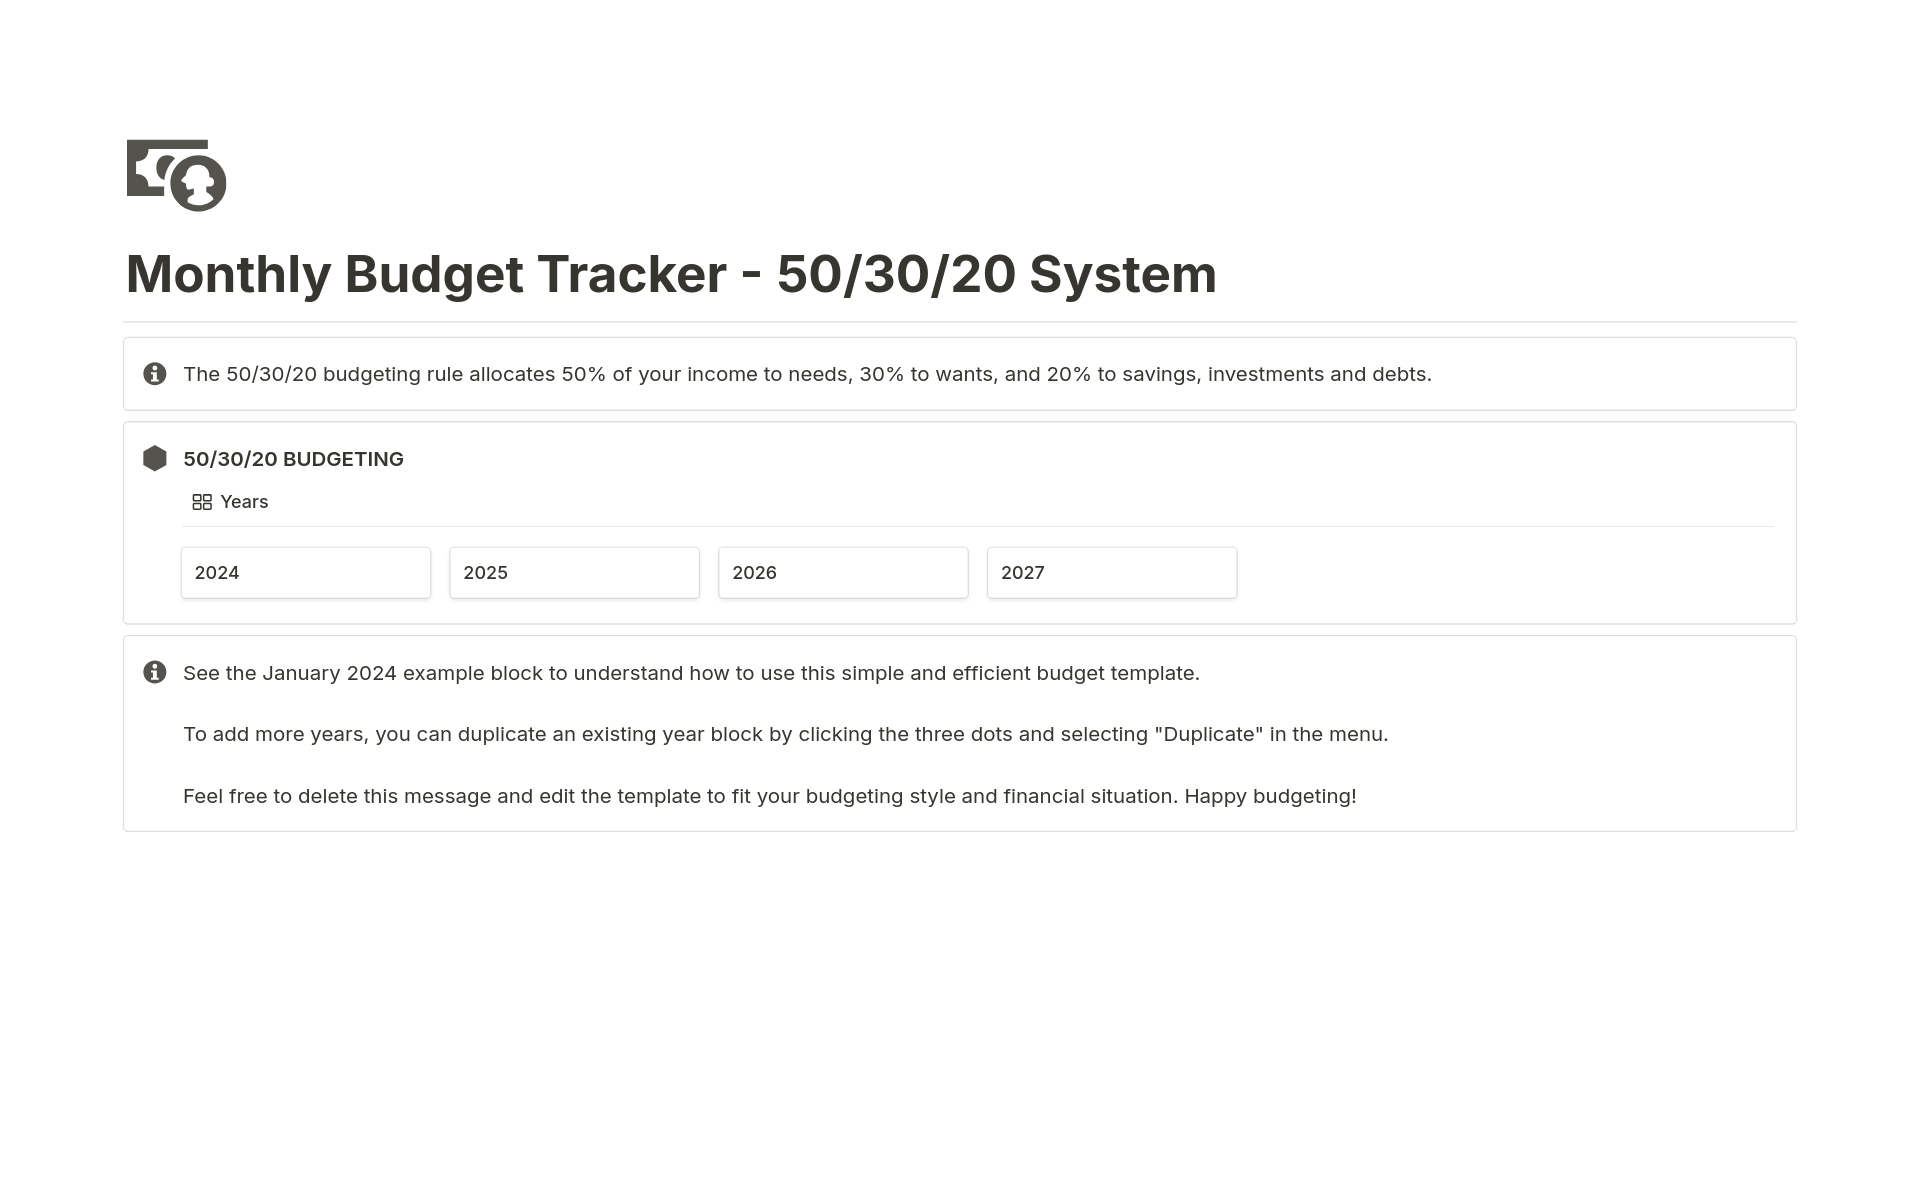 Monthly Budget Tracker - 50/30/20 System님의 템플릿 미리보기